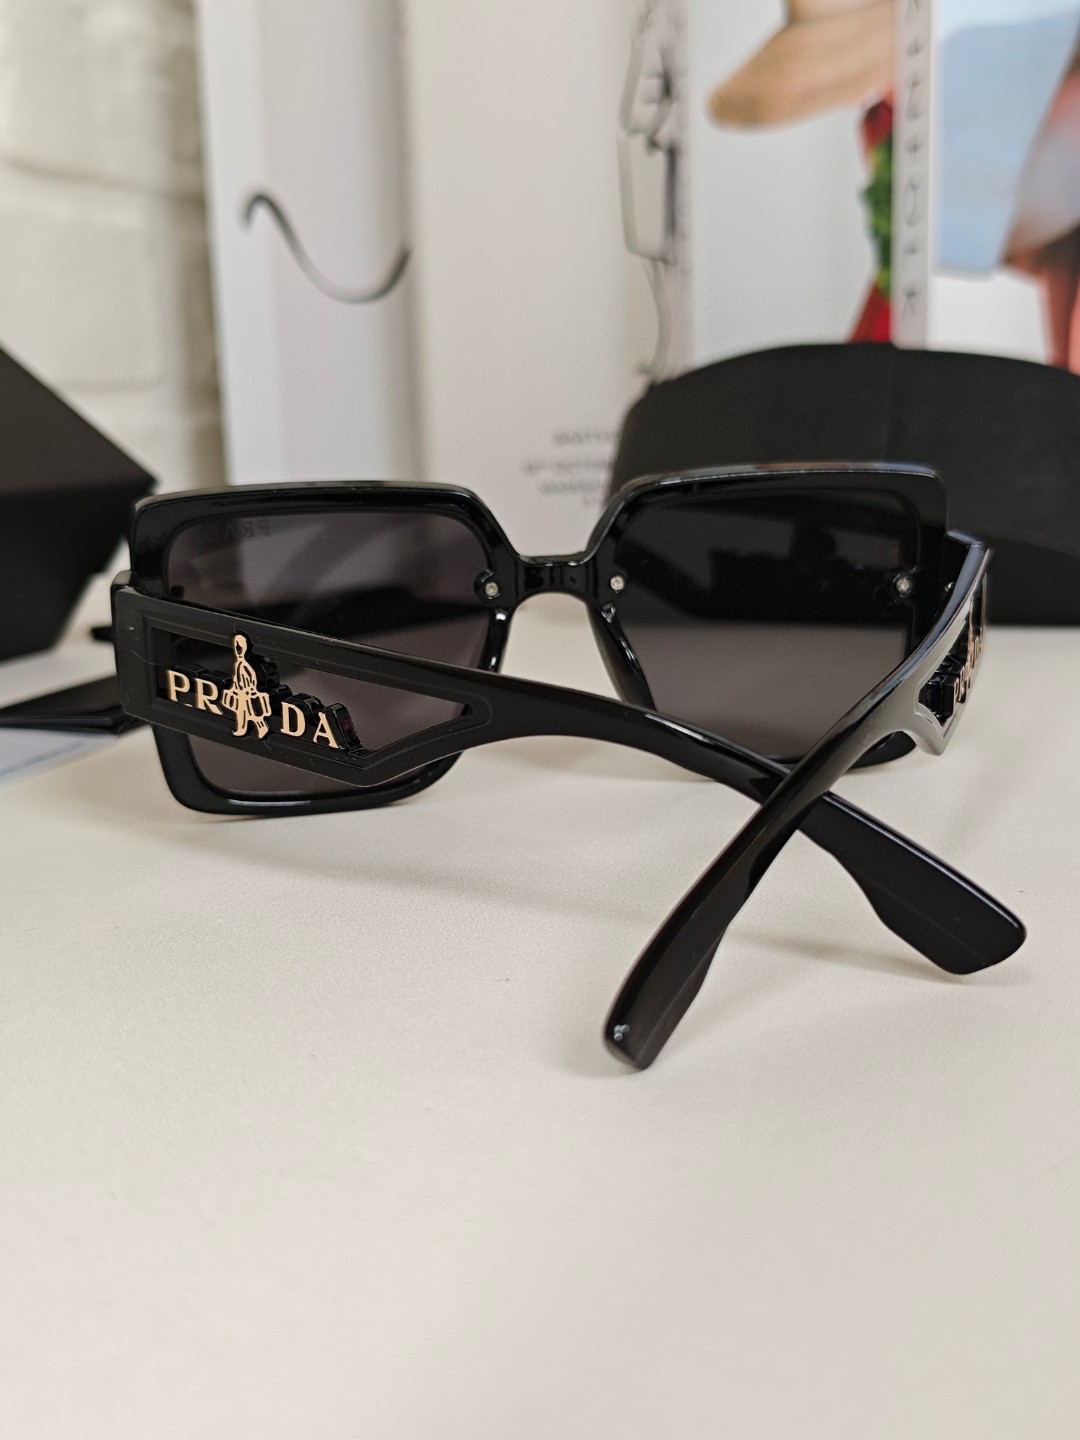 PRADA普拉达2024新款人提手提箱系列太阳镜减轻强光负担遮挡有害光线防辐射出行旅游搭配衣服必备品开车